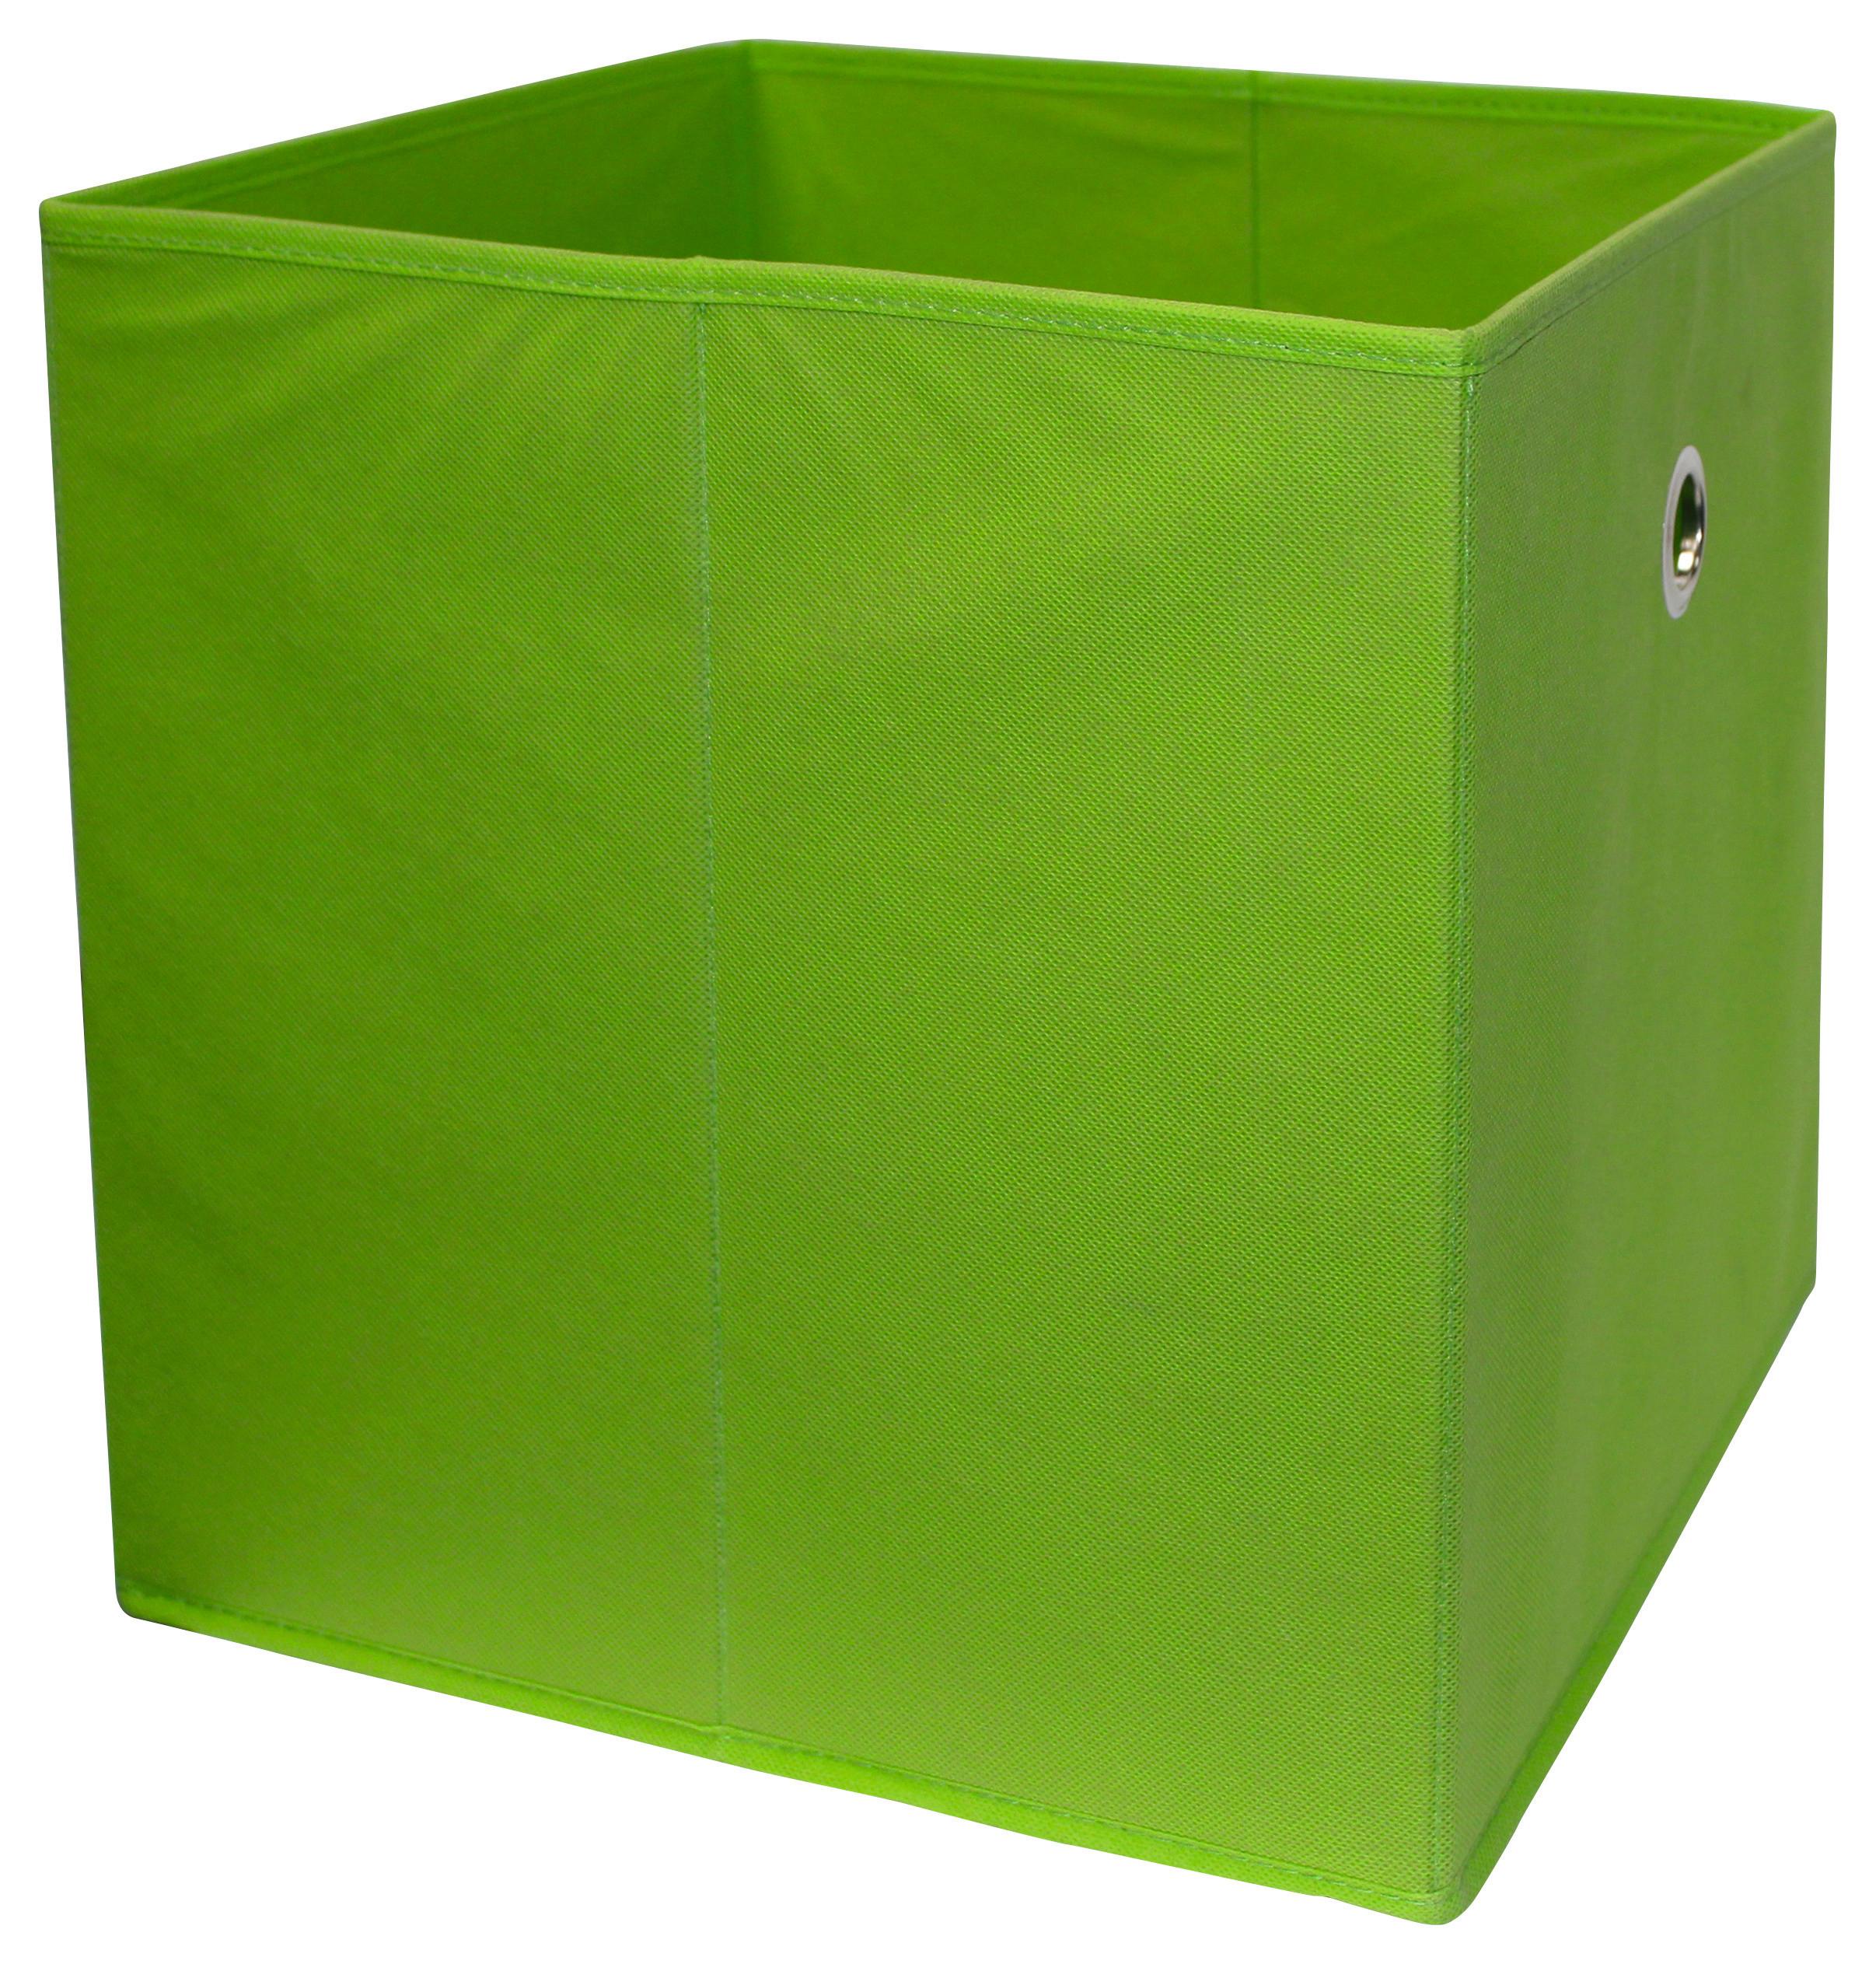 Faltbox Cubi Vlies Petrol 32x32x32 cm 2 Grifflöcher - Grün, MODERN, Holzwerkstoff/Textil